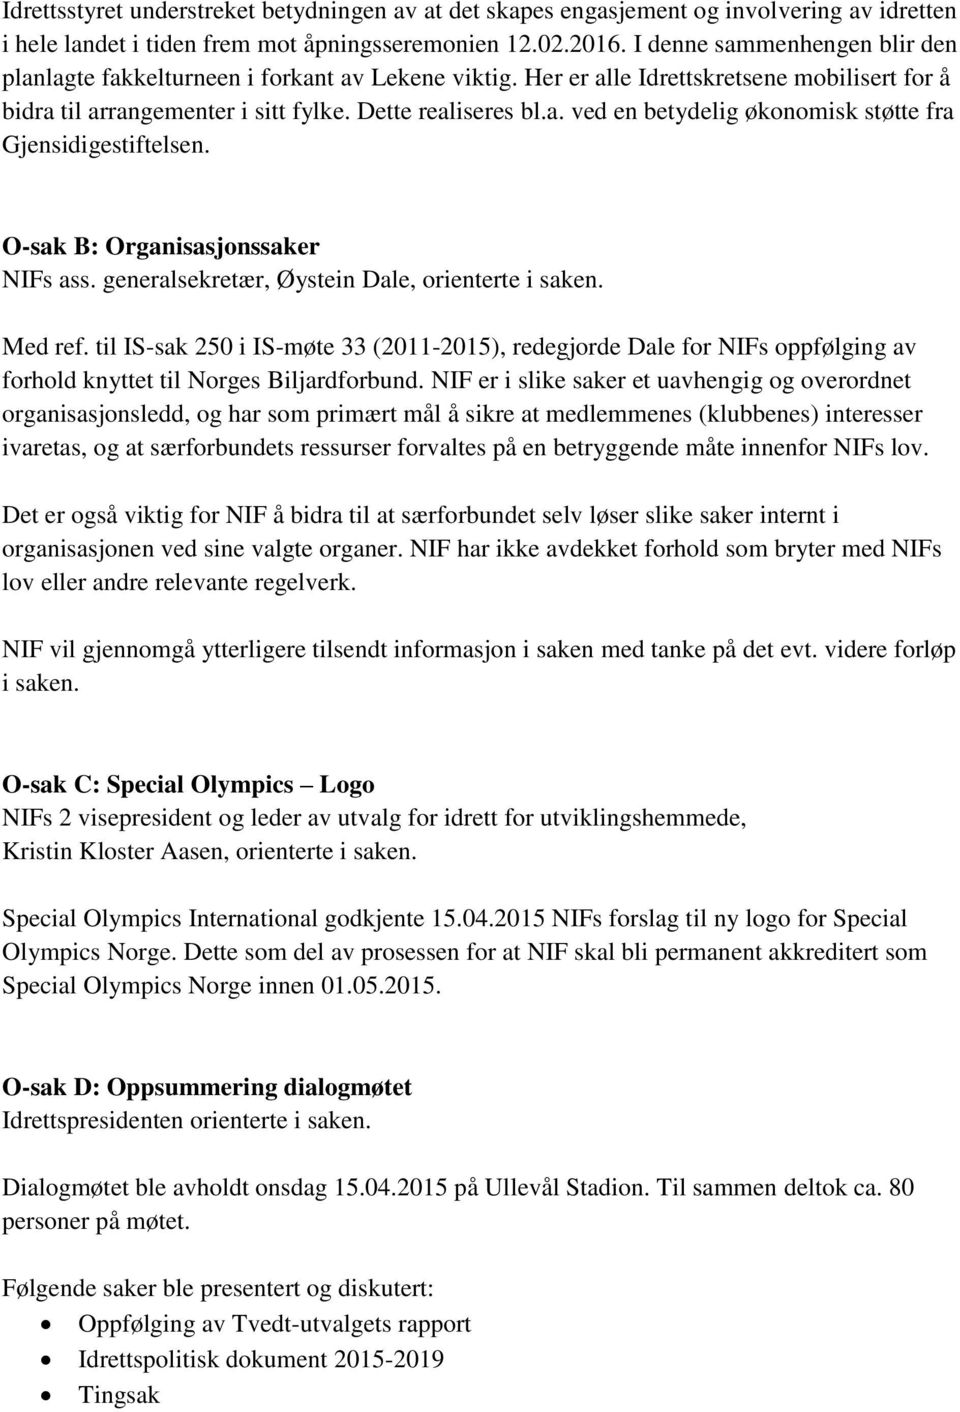 O-sak B: Organisasjonssaker NIFs ass. generalsekretær, Øystein Dale, orienterte i saken. Med ref.